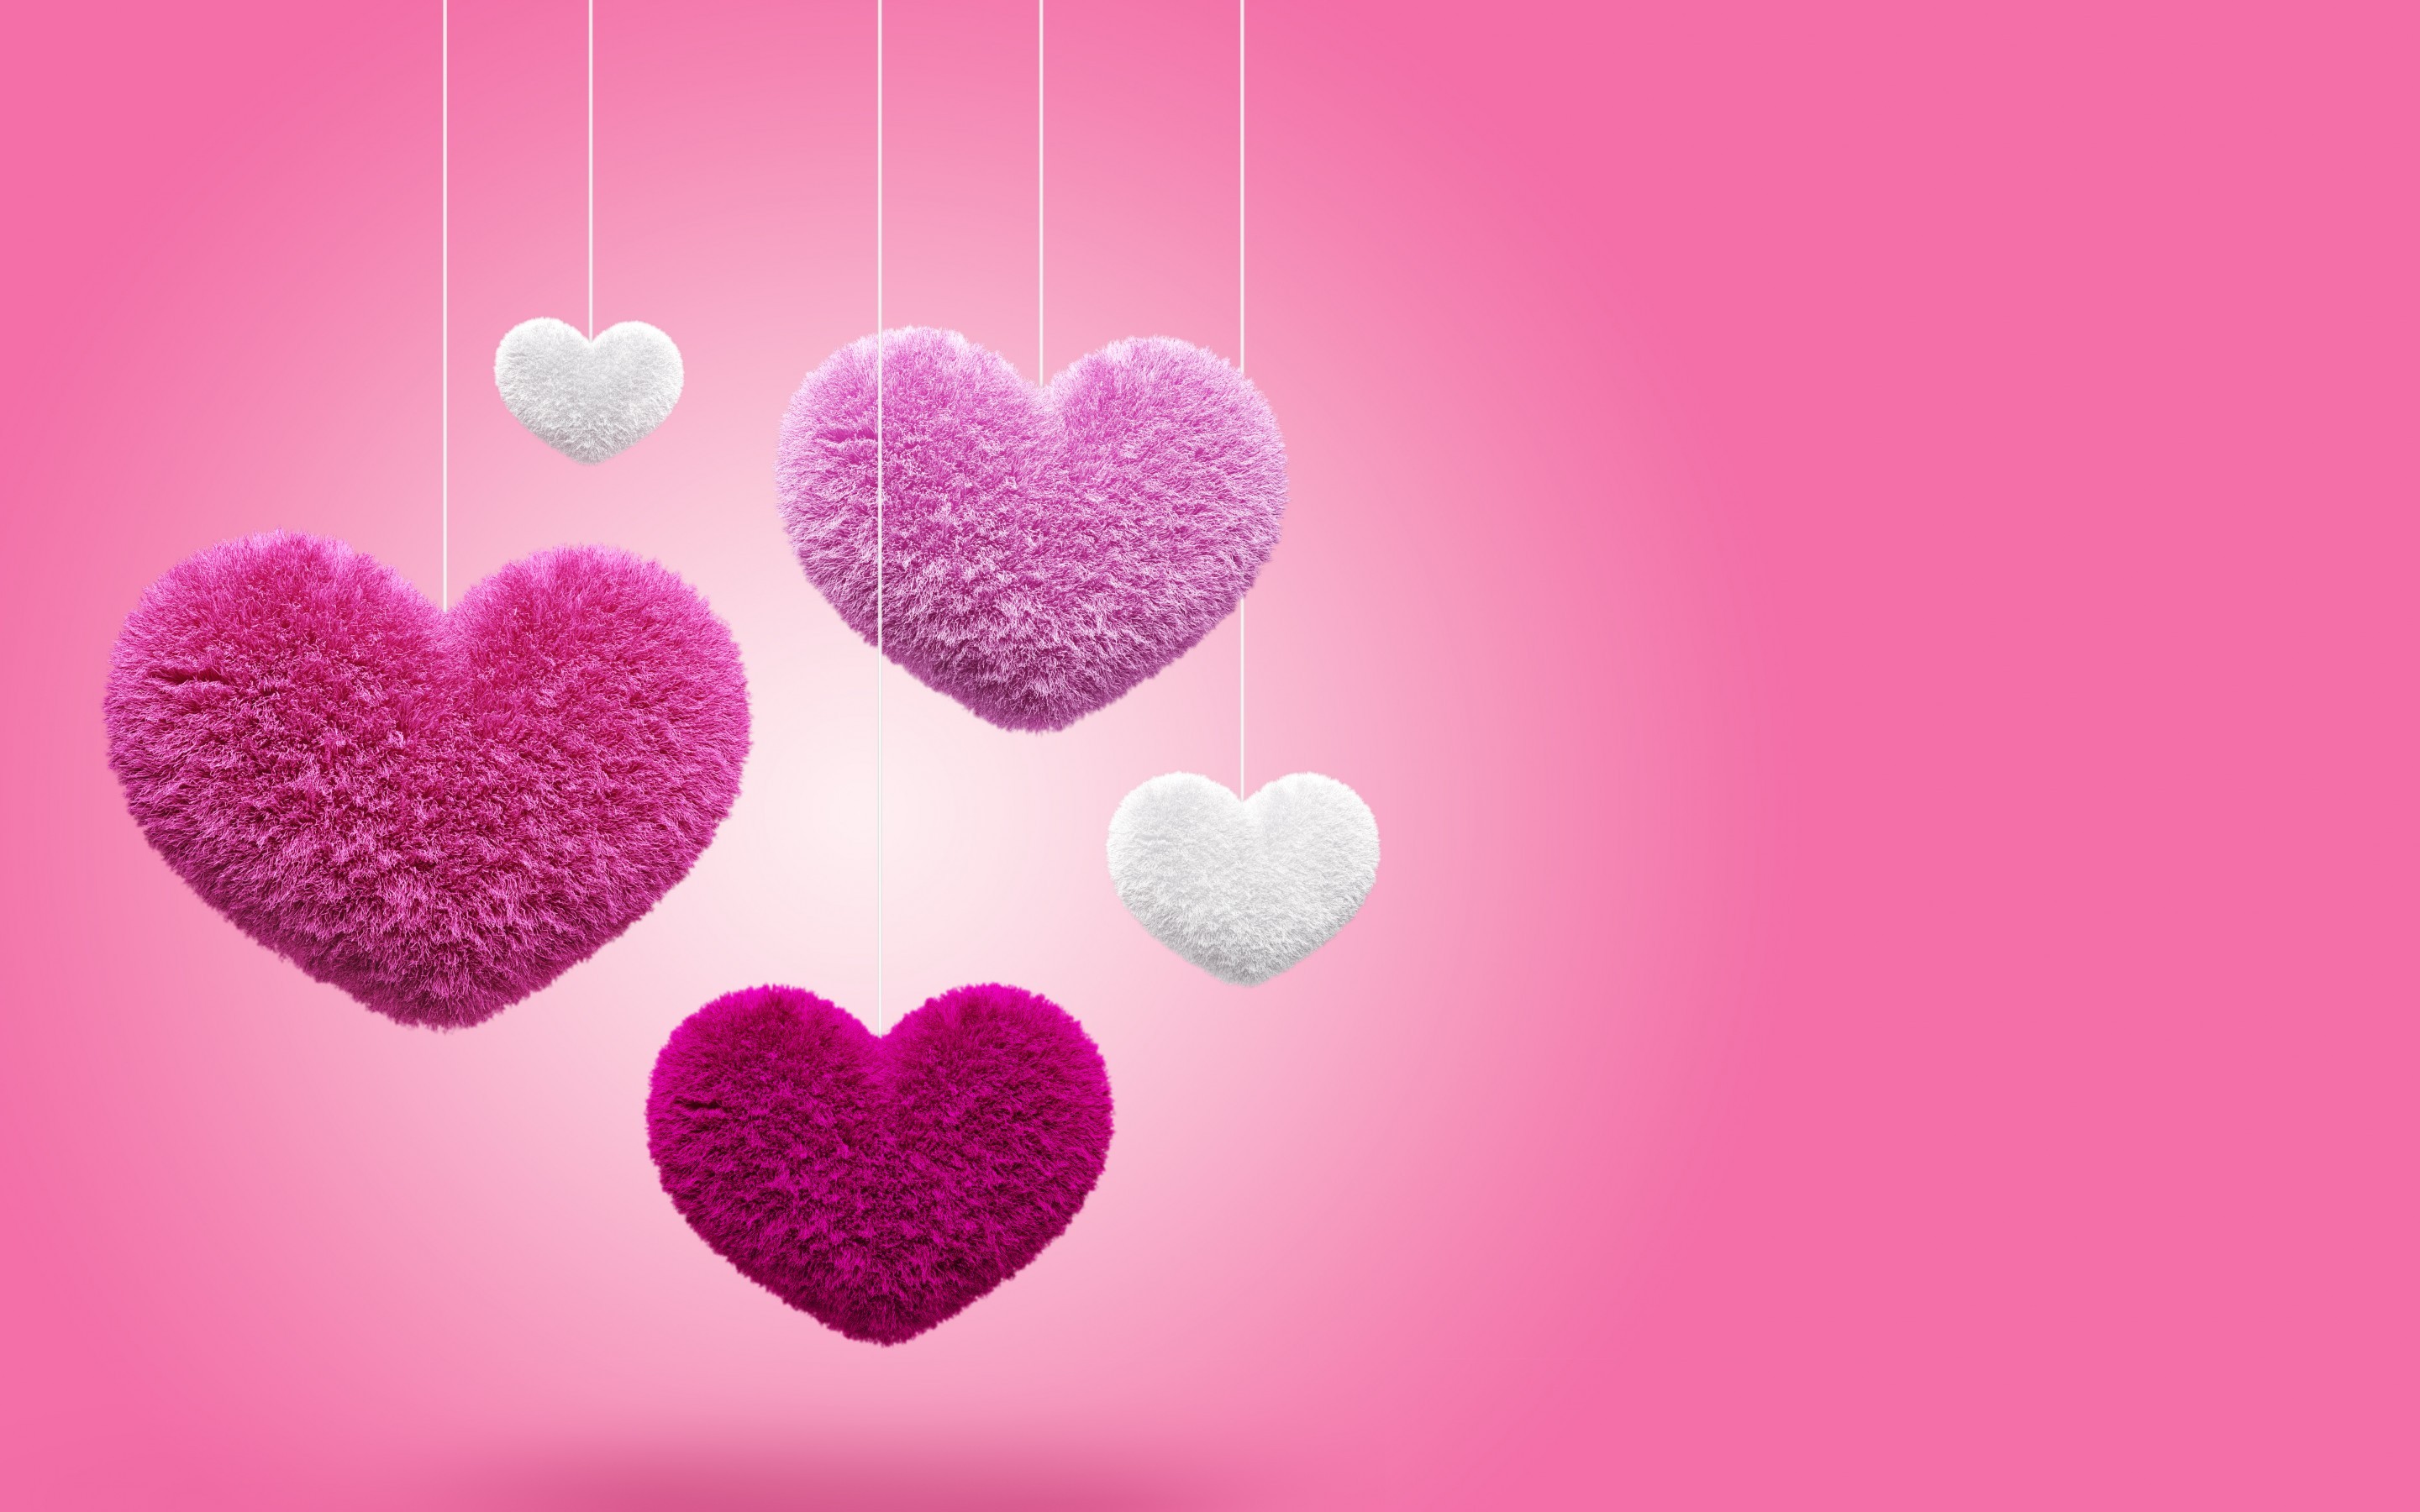 Hình nền tim 3D màu hồng sẽ đem lại cho bạn cảm giác yêu đời và vô cùng lãng mạn. Nếu bạn muốn trang trí chiếc điện thoại của mình với những bức hình nền độc đáo và độc đáo, hãy xem ngay những hình nền tim 3D màu hồng của chúng tôi.